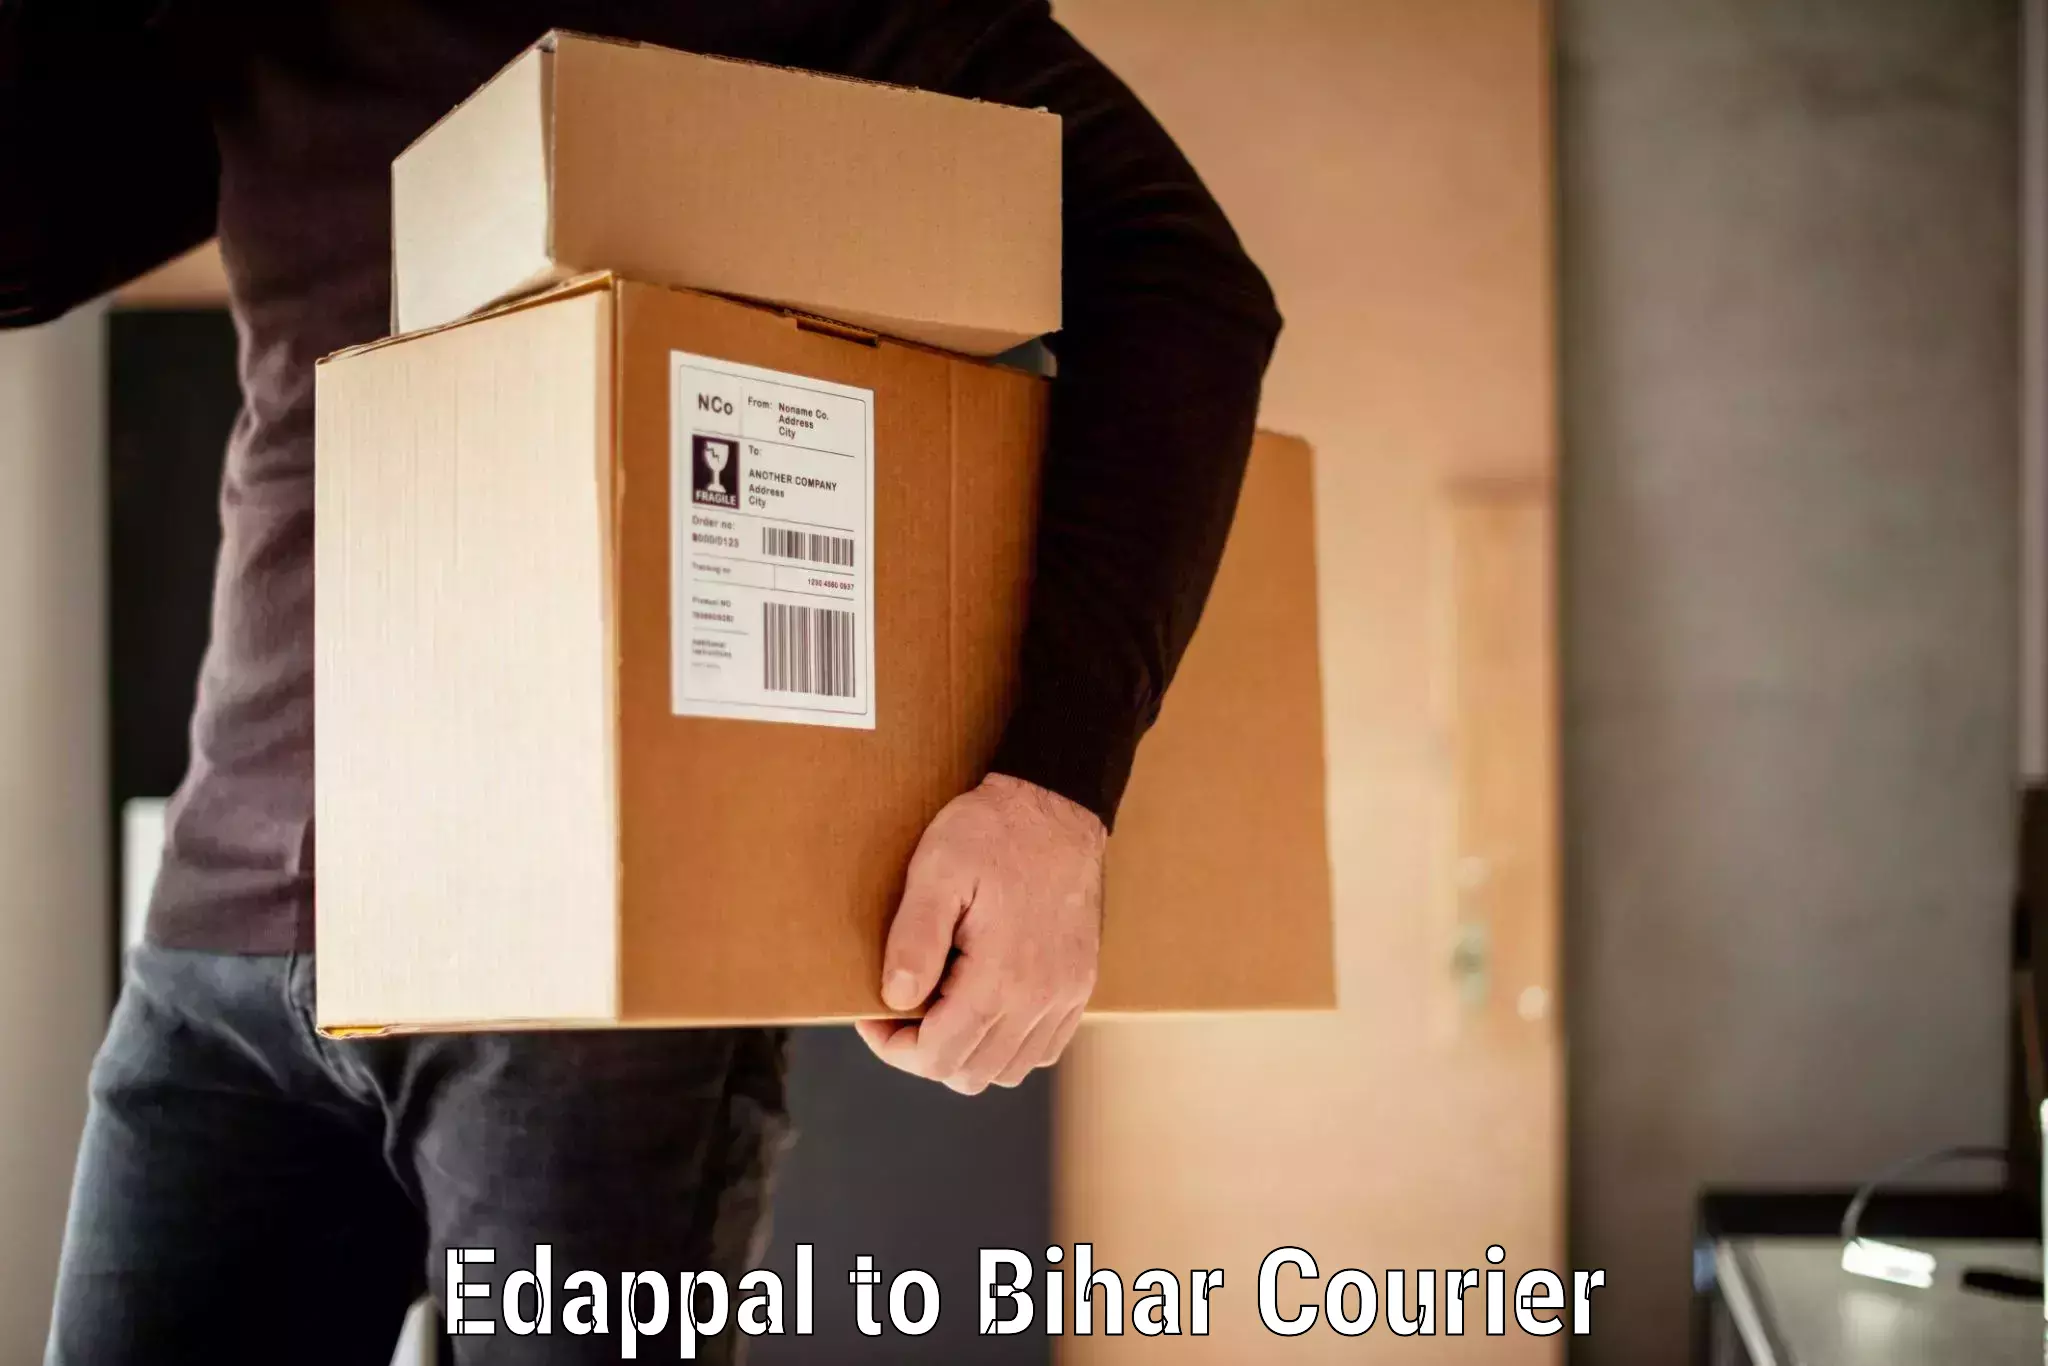 Baggage transport scheduler Edappal to Madhepura